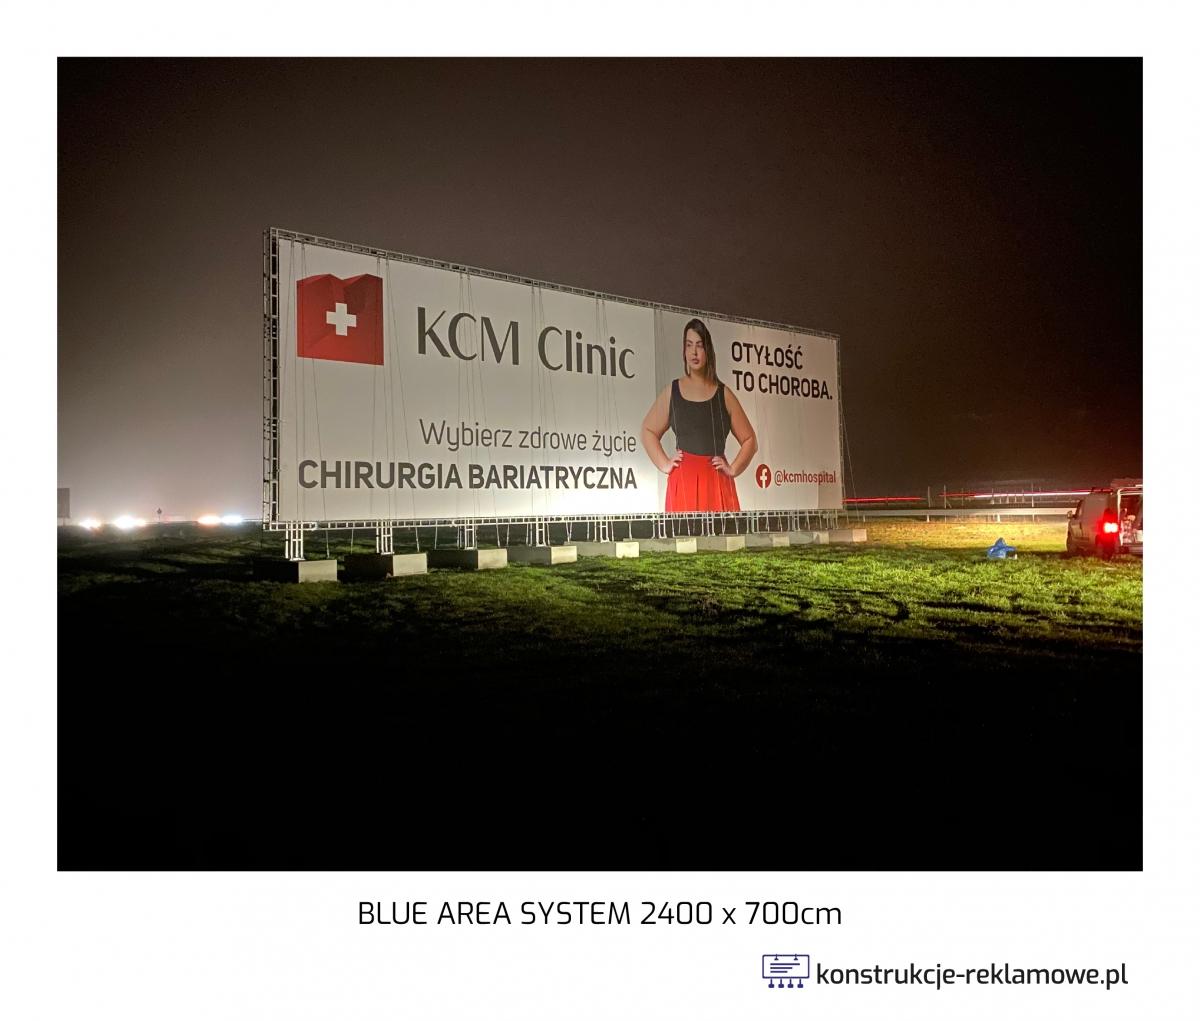 Blue Area System bilboard 2400 x 700cm - konstrukcje-reklamowe.pl